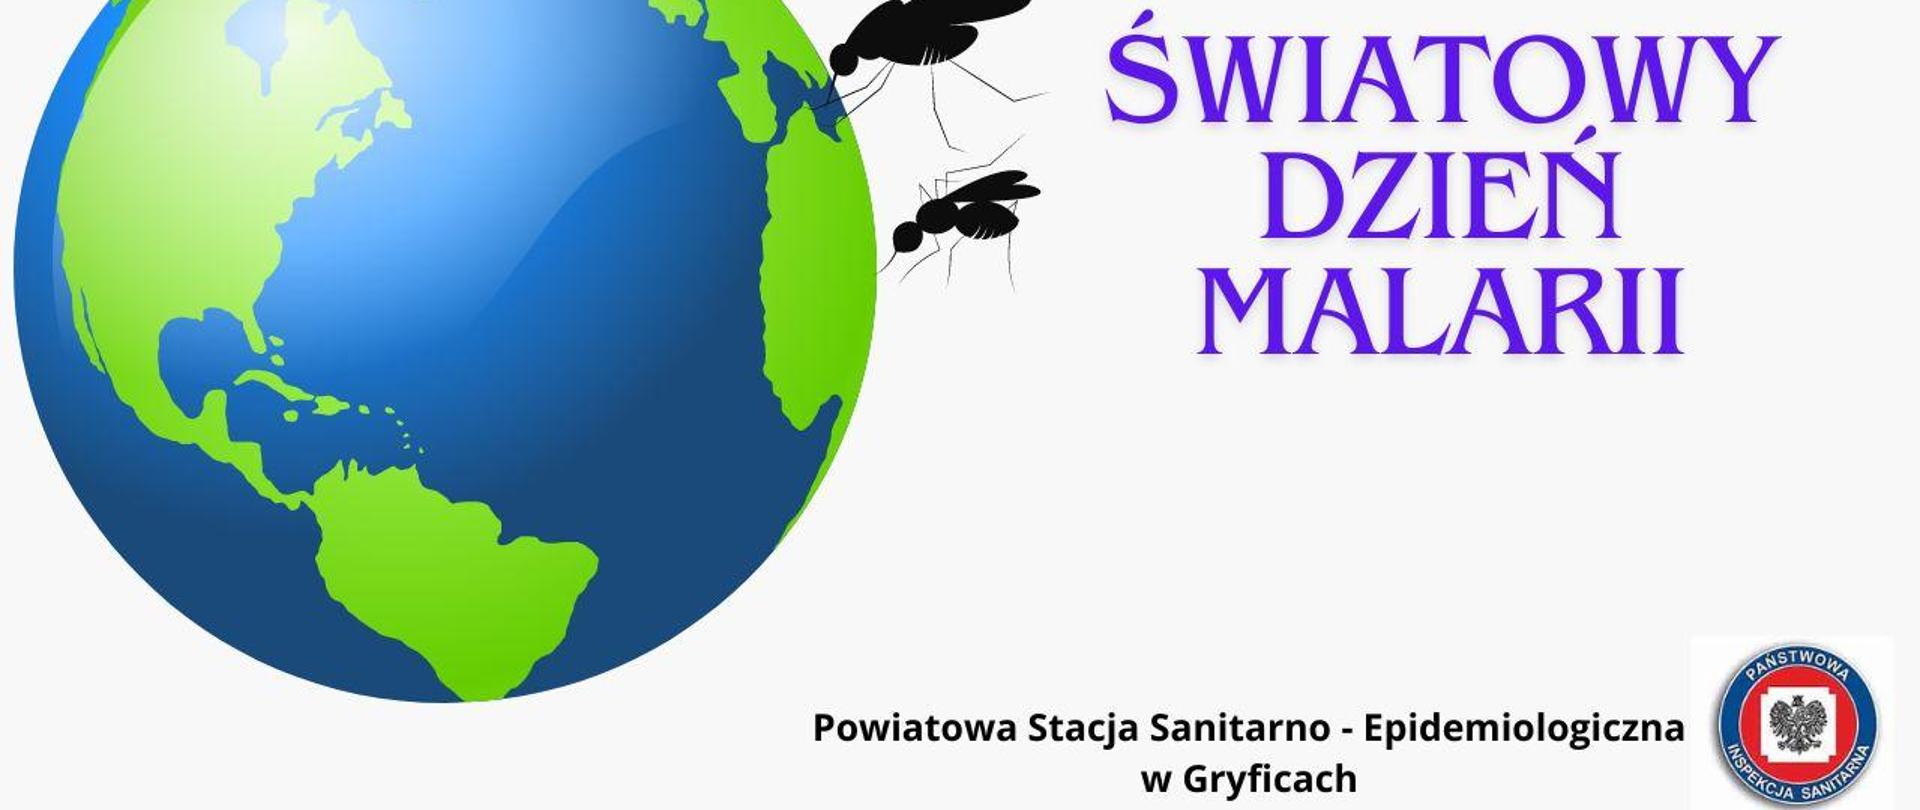 25 kwietnia – Światowy Dzień Malarii 